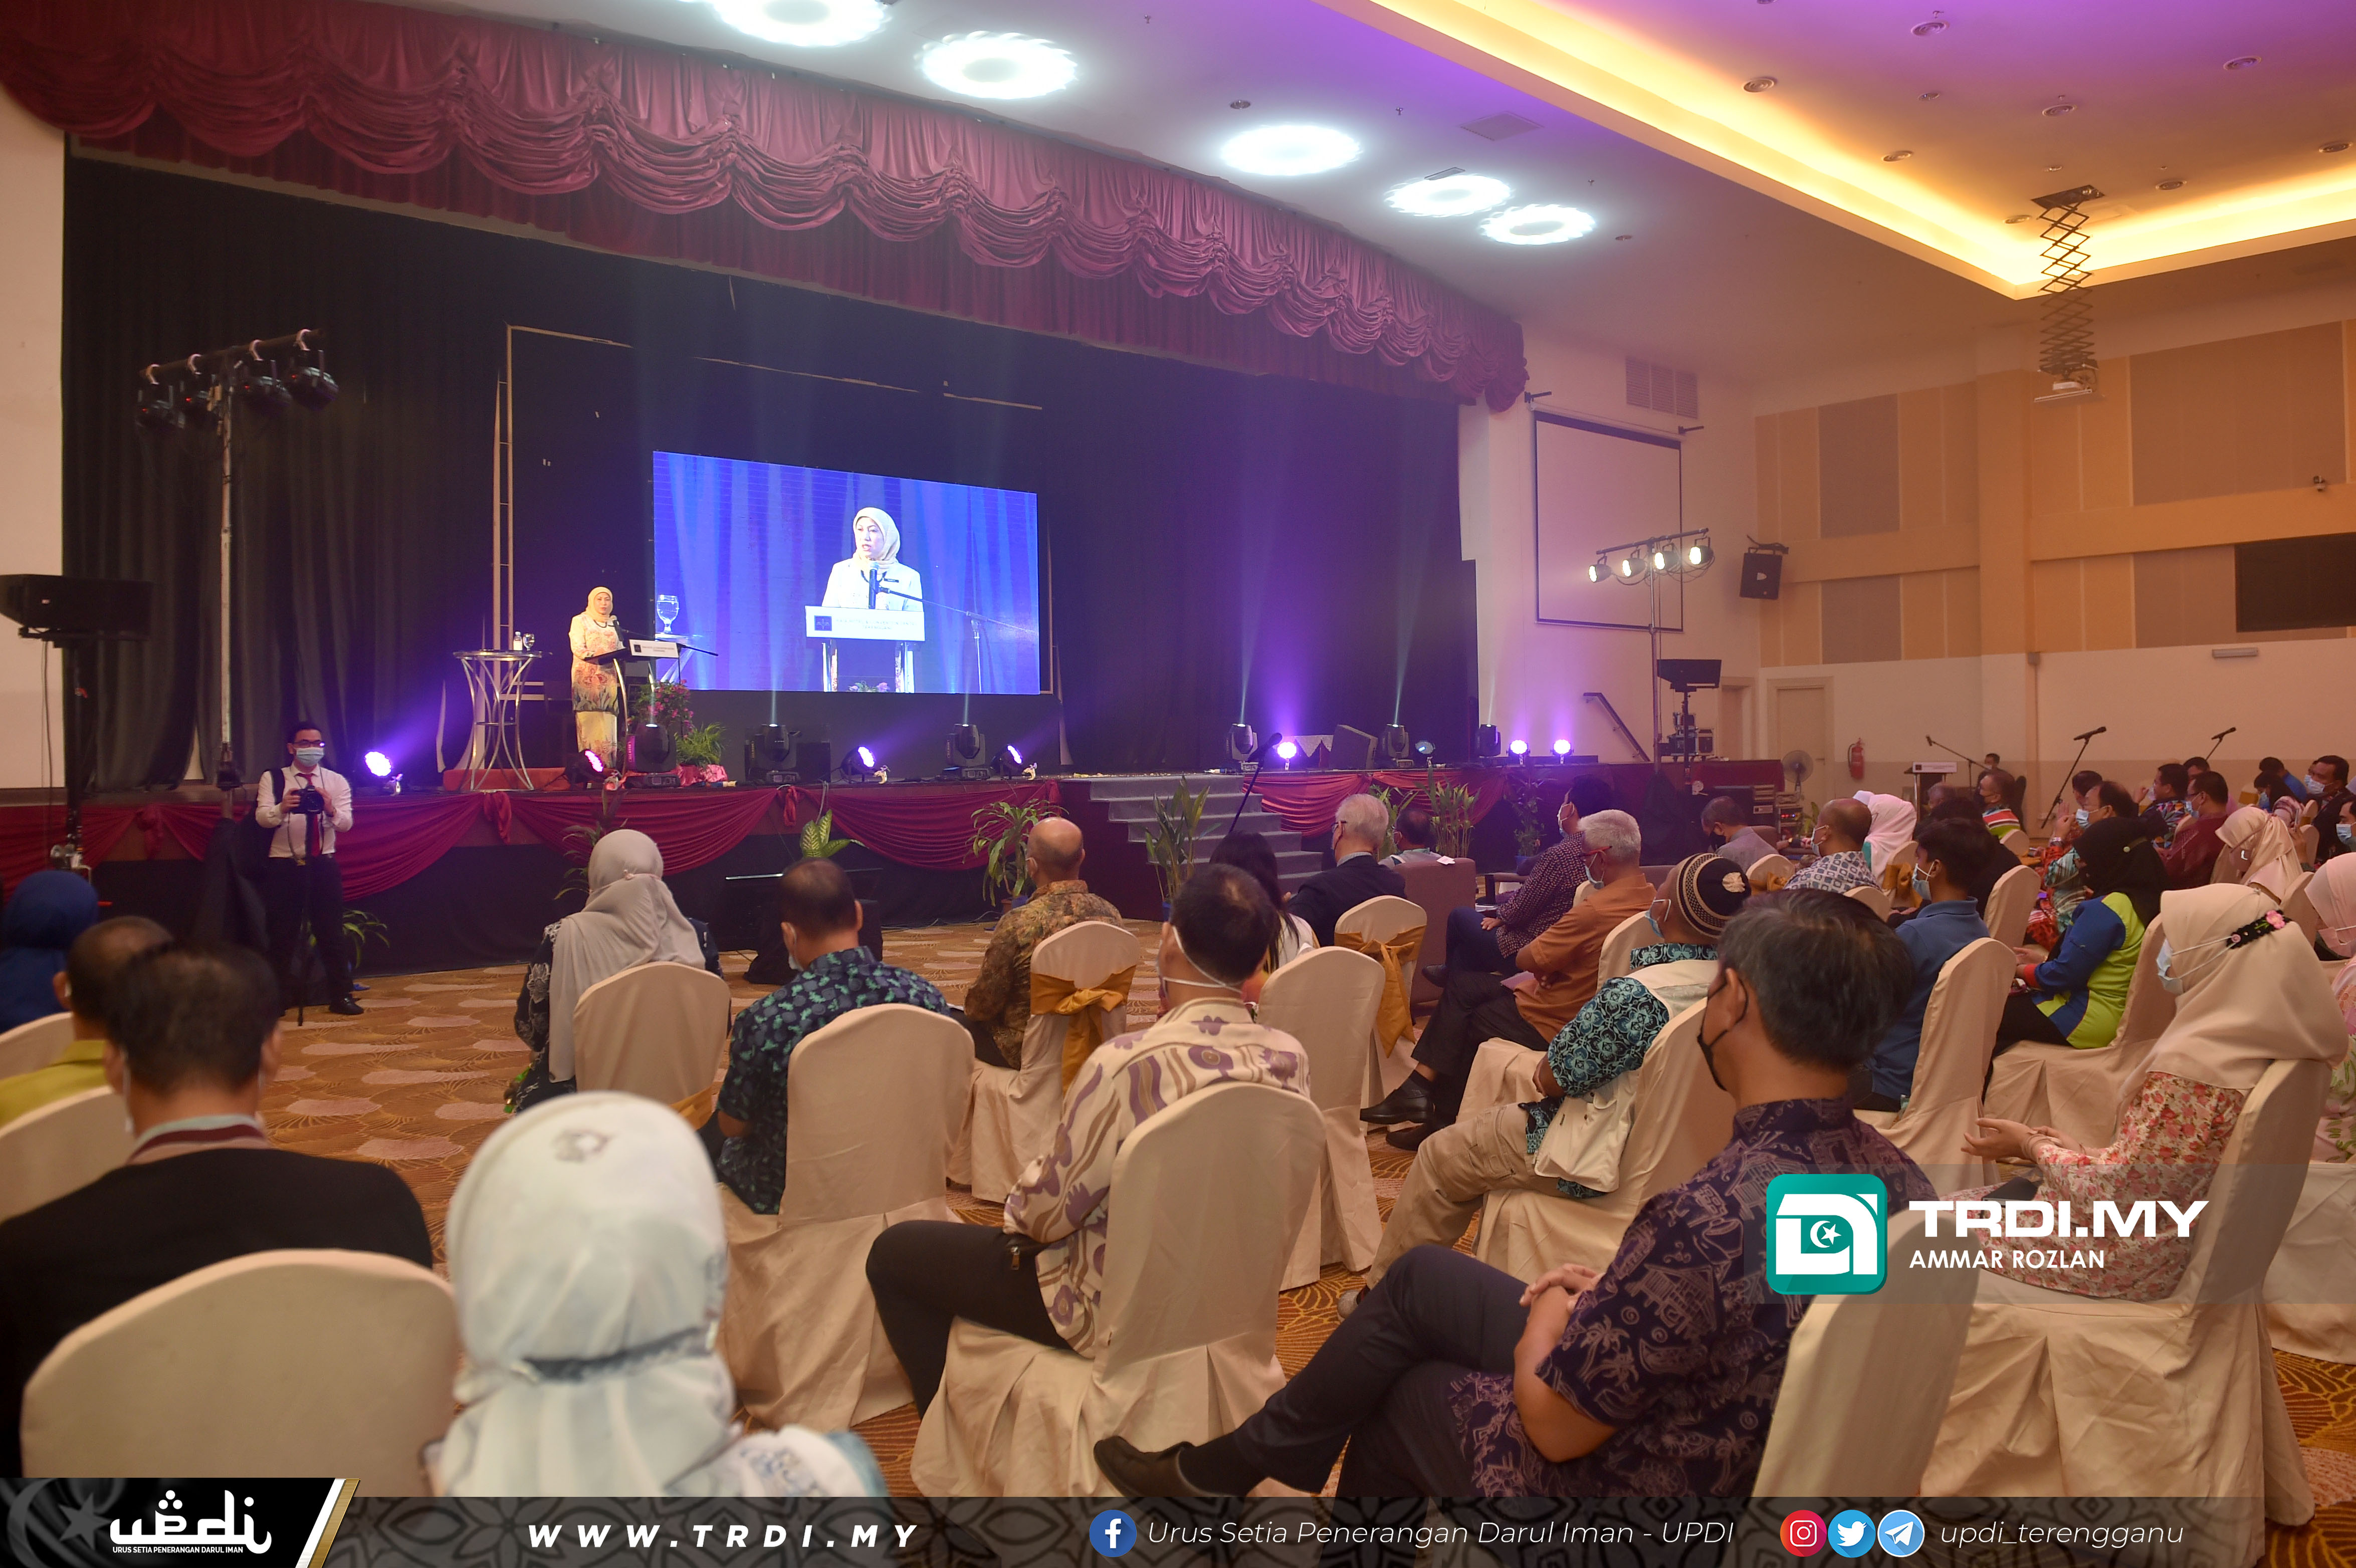 YB Dato' Hajah Nancy Shukri, Menteri Perlancongan, Seni Dan Budaya Malaysia mengadakan Siri Jerayawara (Roadshow) Dasar Perlancongan Negara 2020-2030 Zon Pantai Timur